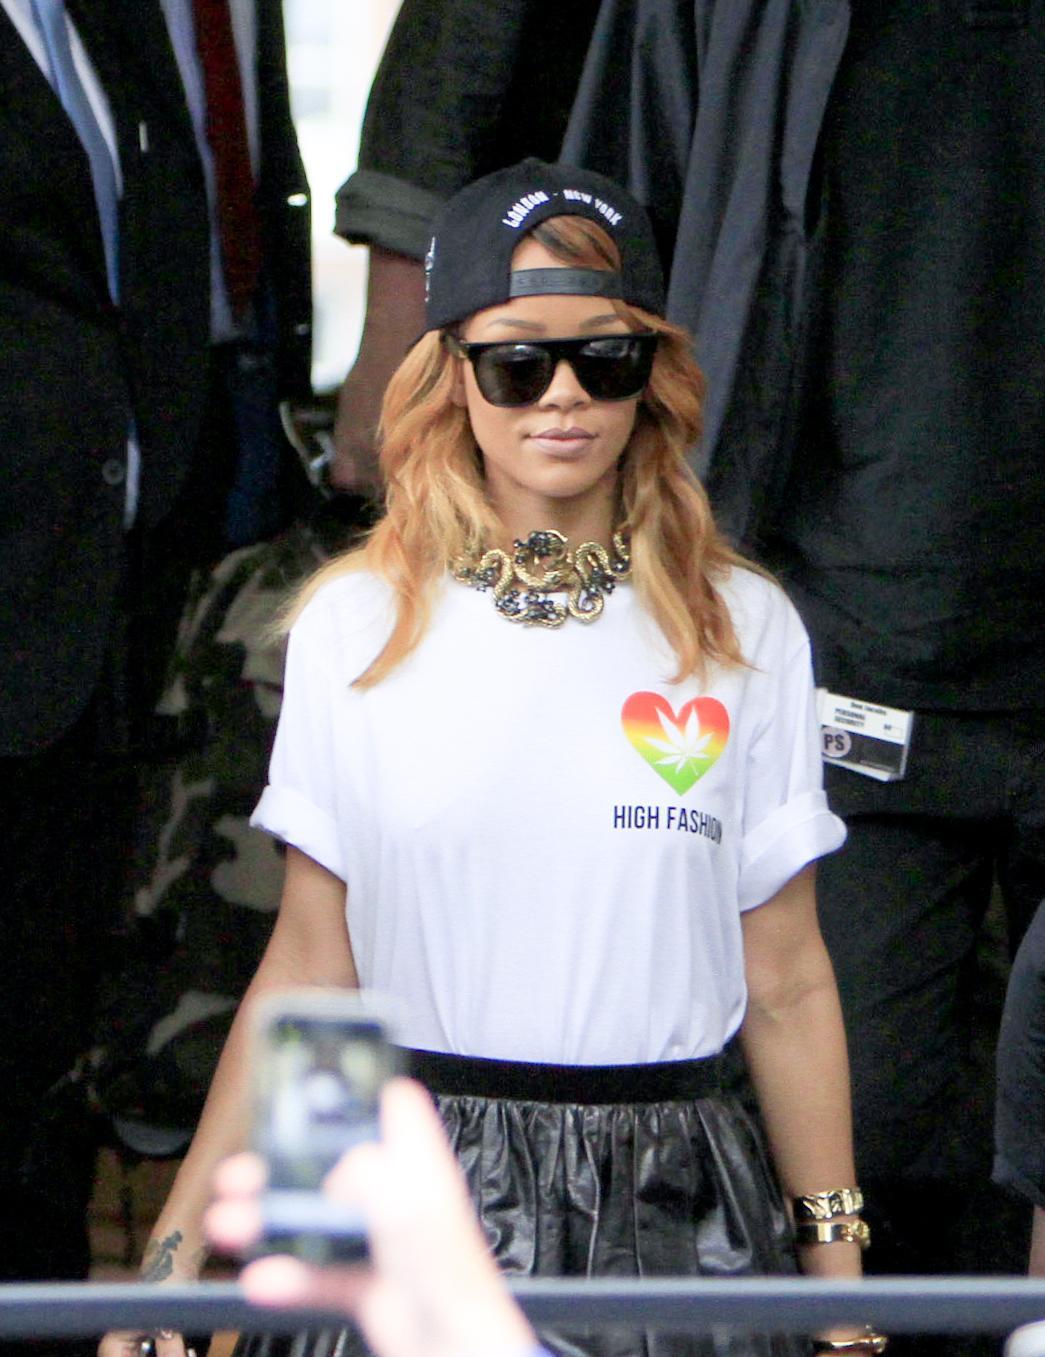 Rihanna, foglia di mariuana stampata sulla maglietta06